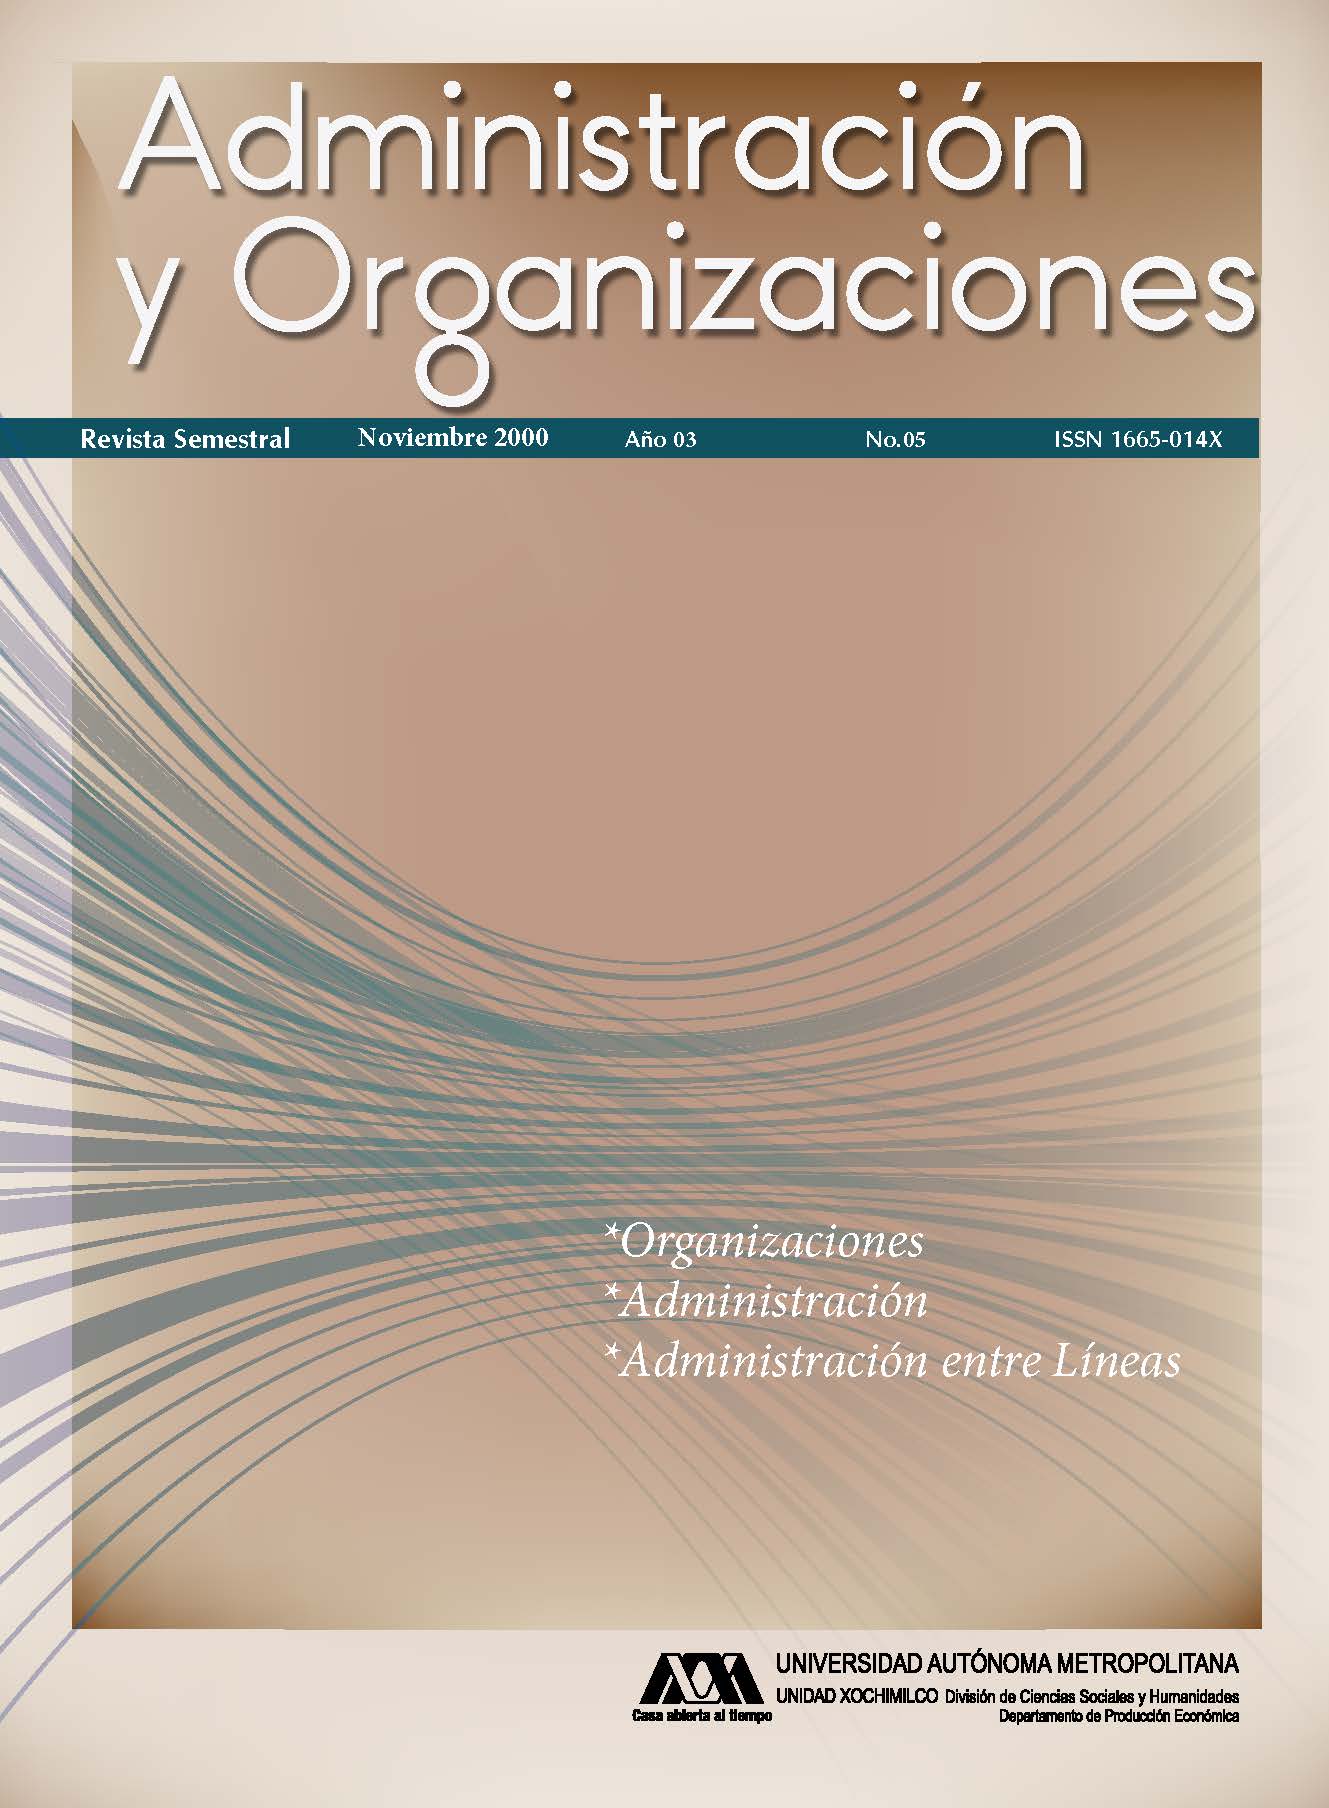 					View Vol. 3 No. 05 (3): Administración y Organizaciones
				